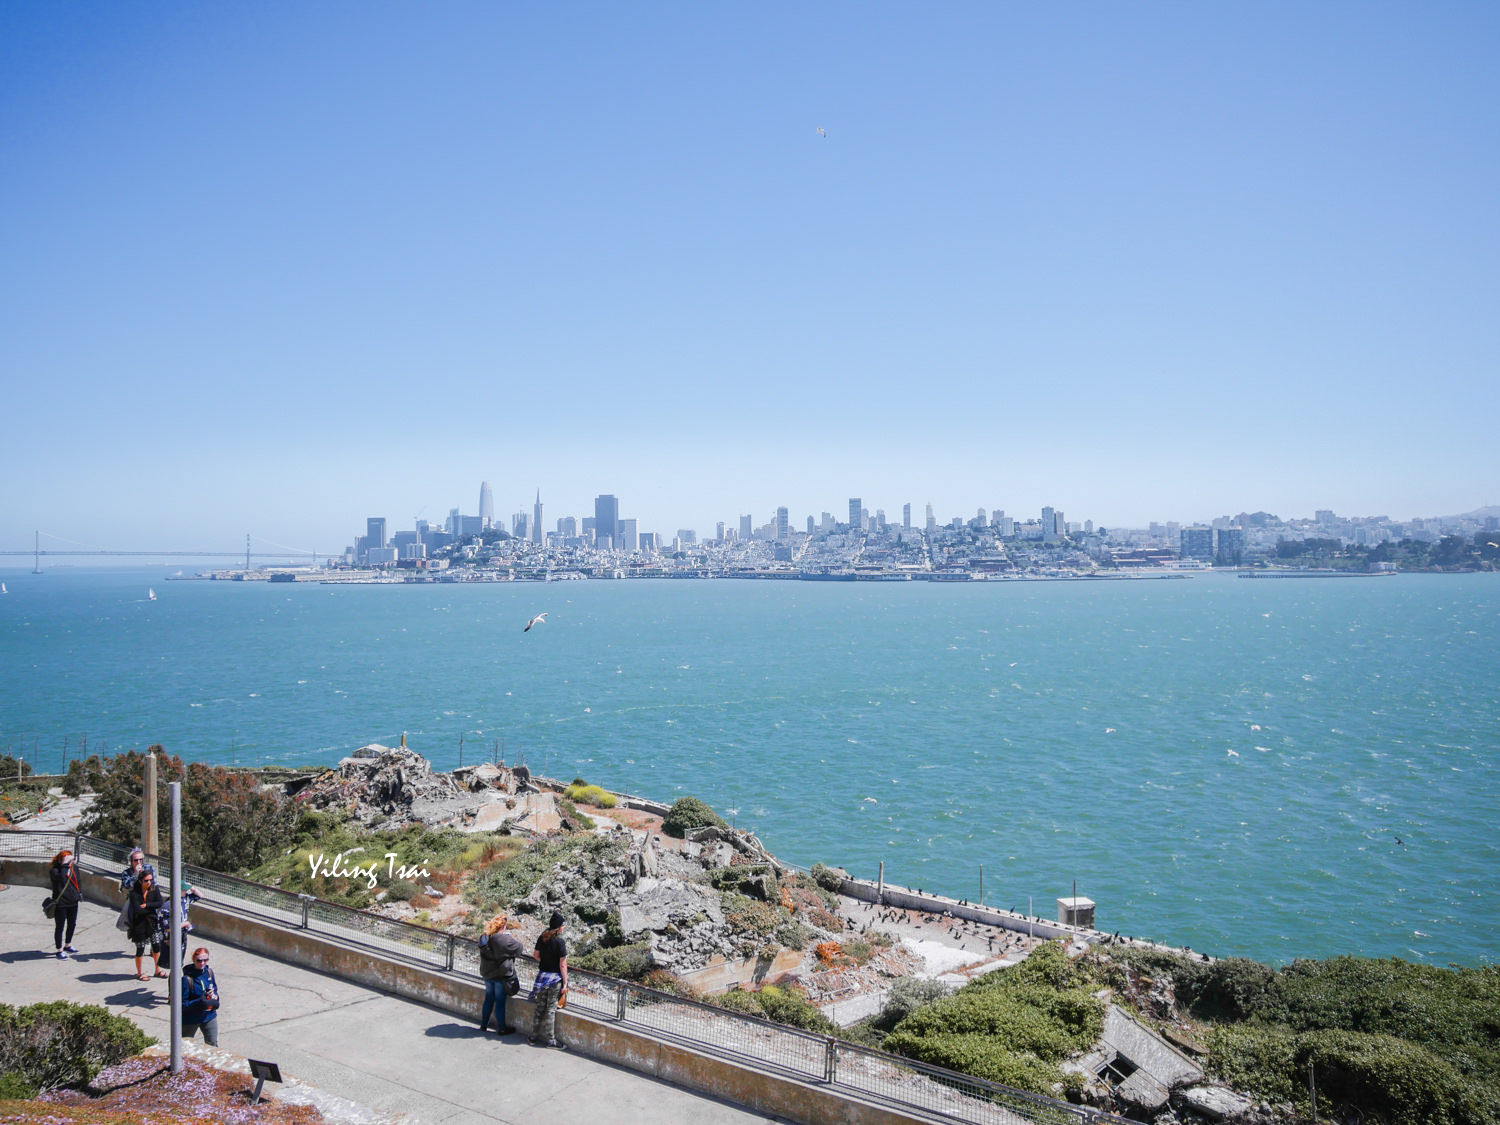 美國舊金山景點 惡魔島 Alcatraz Island 舊金山必去海上監獄